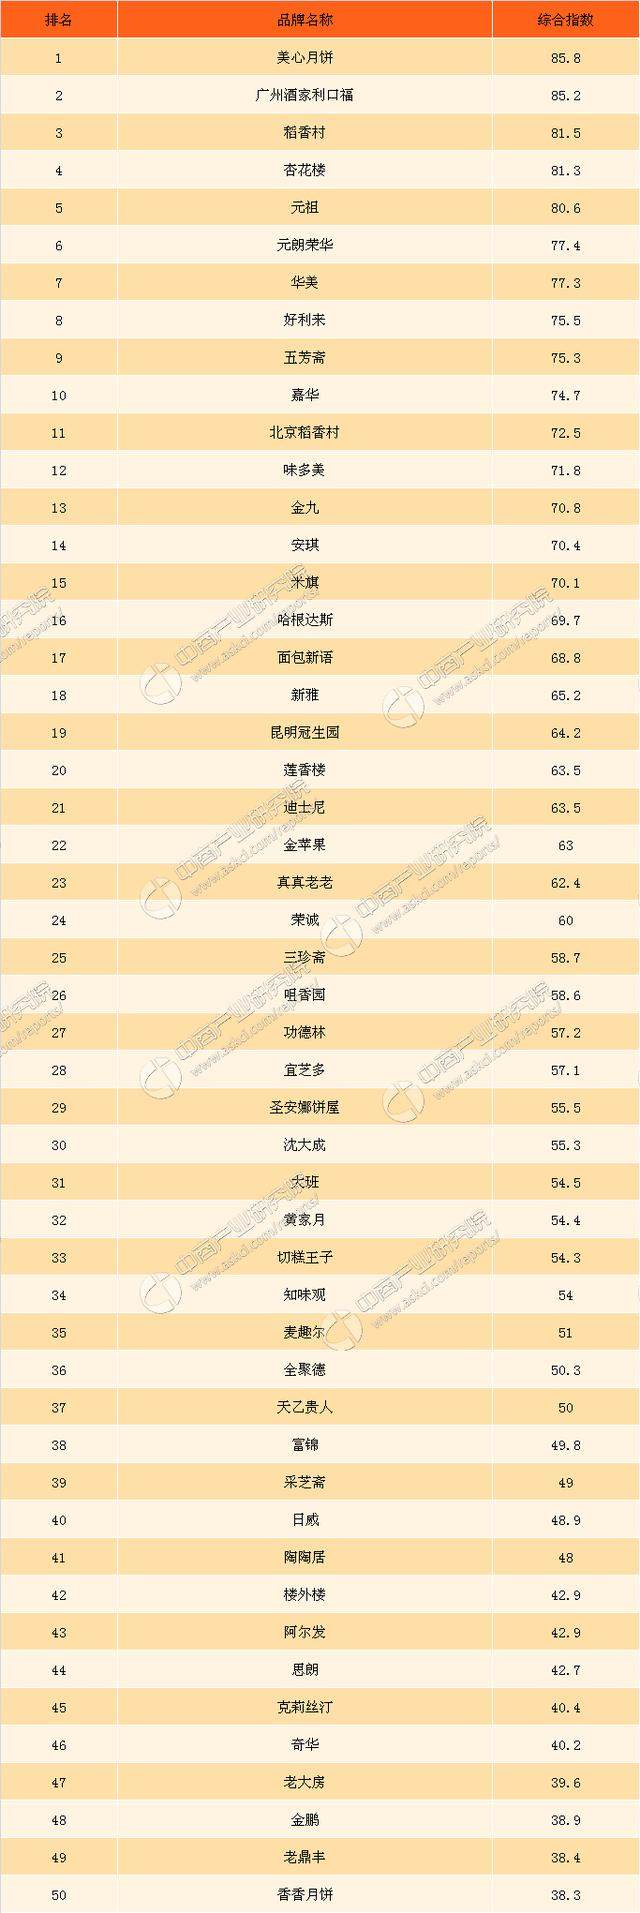 2017年中国网民最关注月饼品牌排行榜TOP50